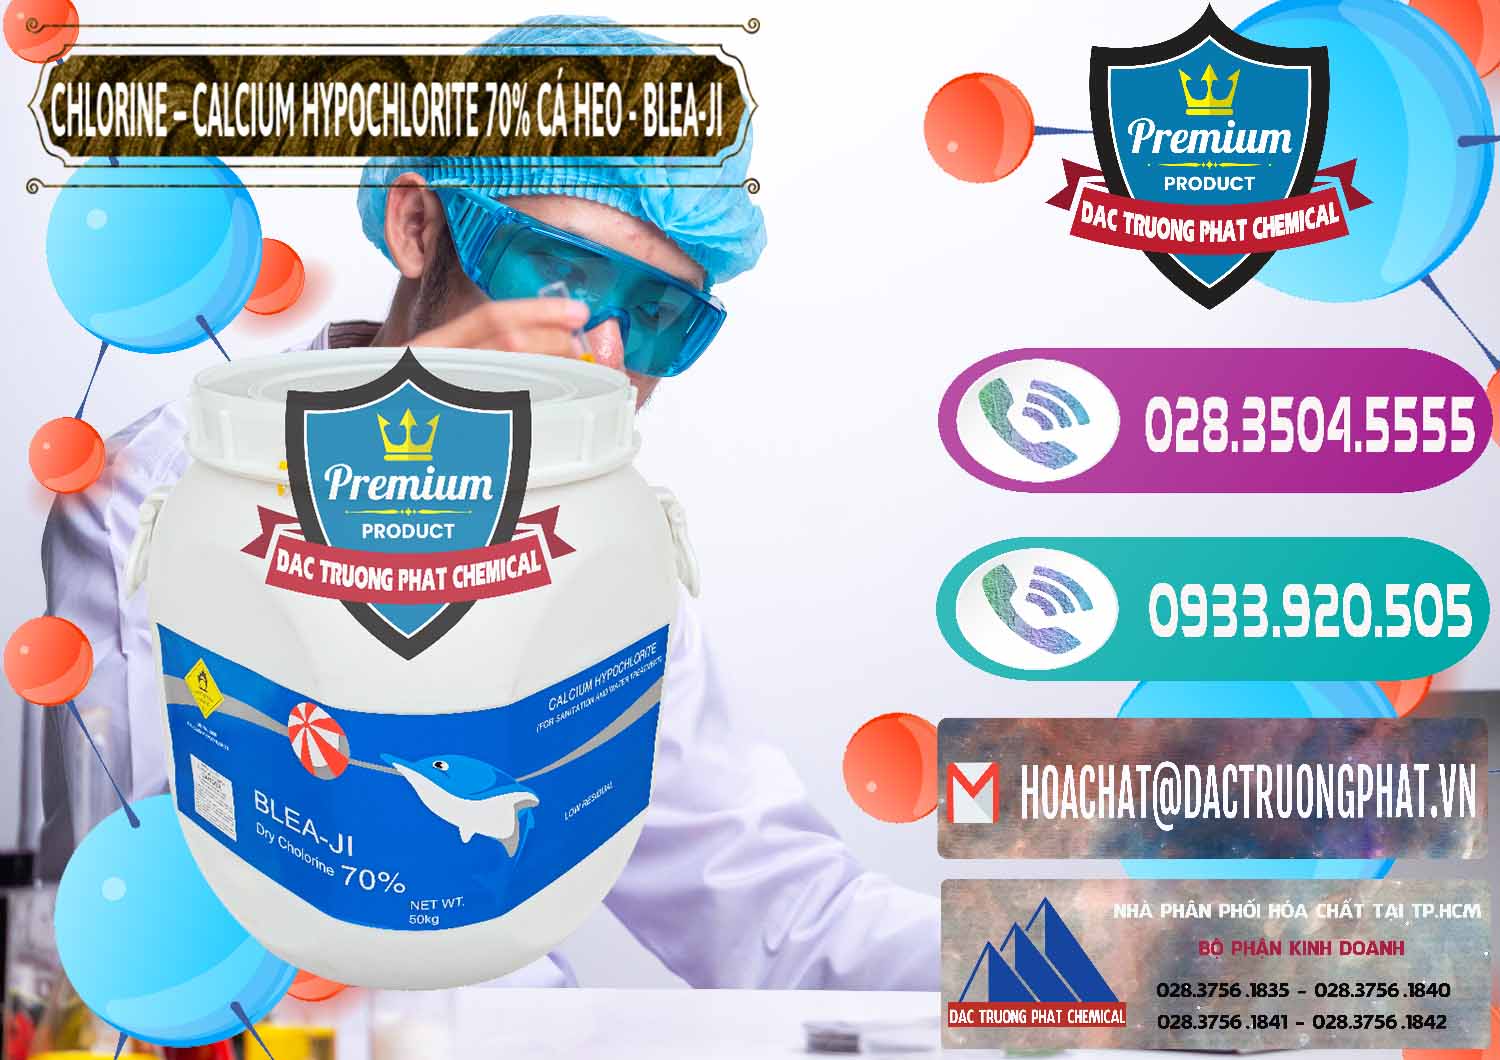 Cty chuyên cung ứng & bán Clorin - Chlorine Cá Heo 70% Blea-Ji Trung Quốc China - 0056 - Cty phân phối _ kinh doanh hóa chất tại TP.HCM - hoachatxulynuoc.com